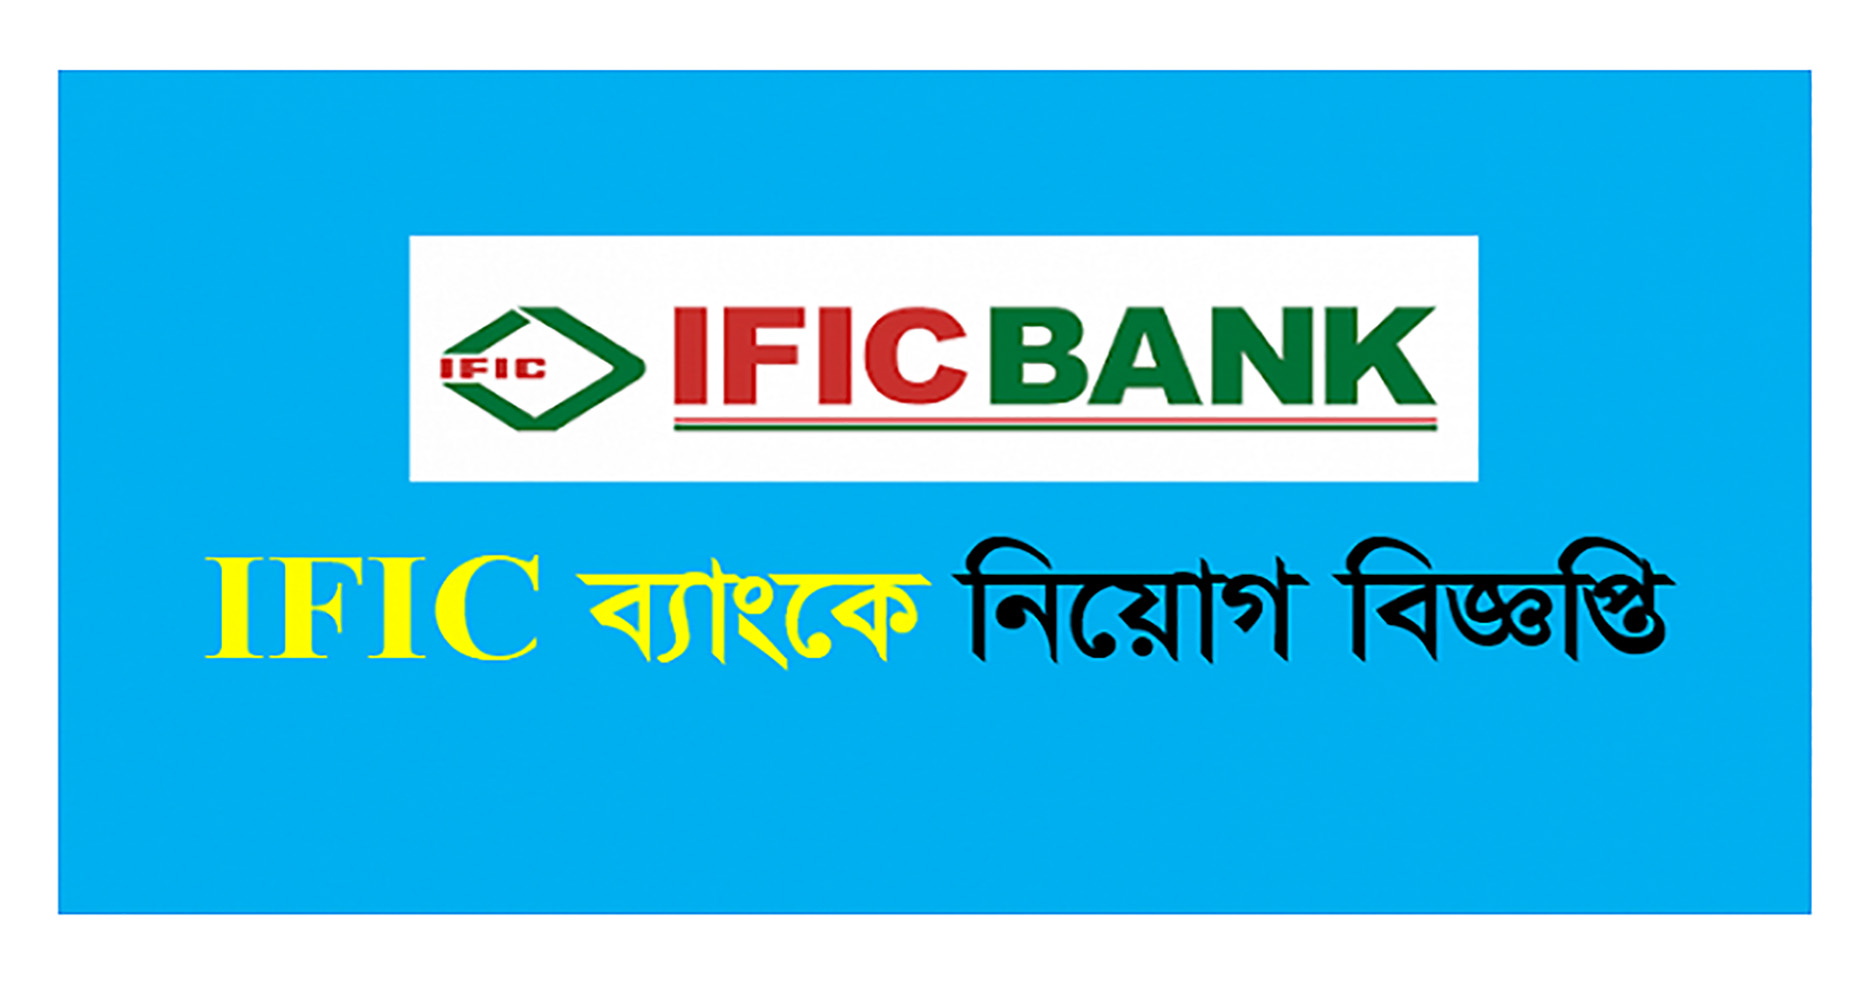 IFIC Bank Limited Job Circular 2018